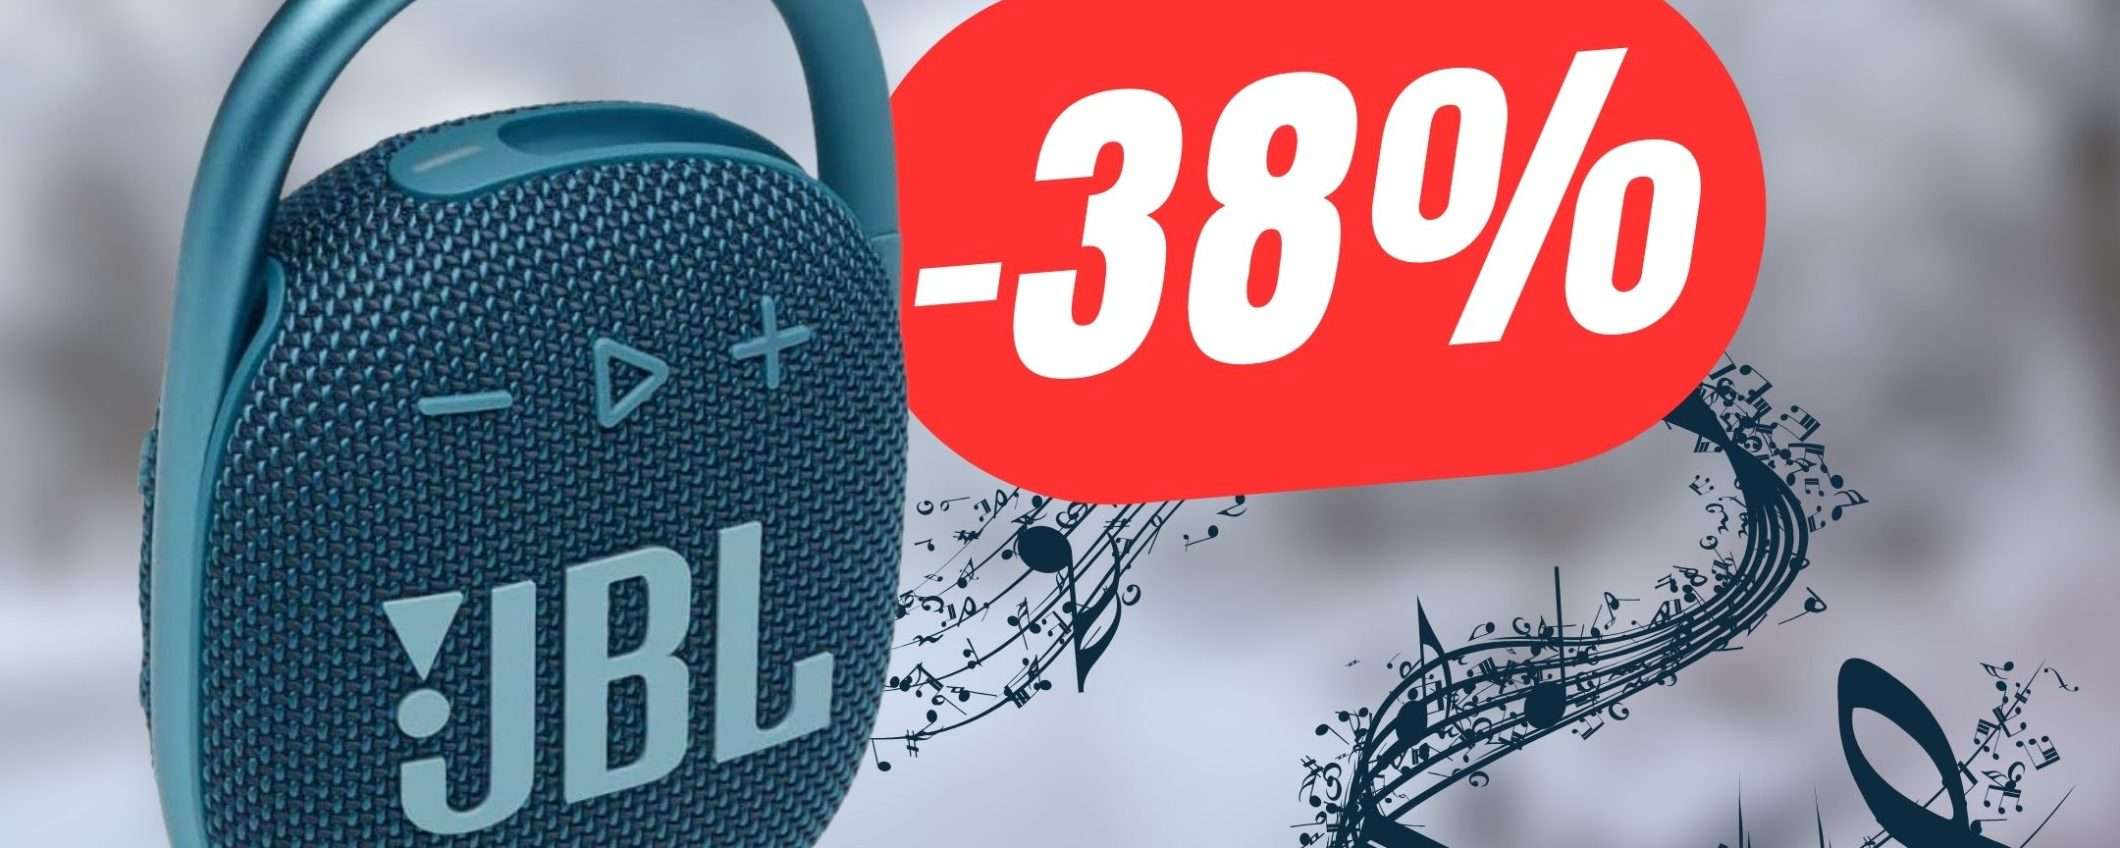 Lo Speaker Bluetooth di JBL è in sconto del 38%!